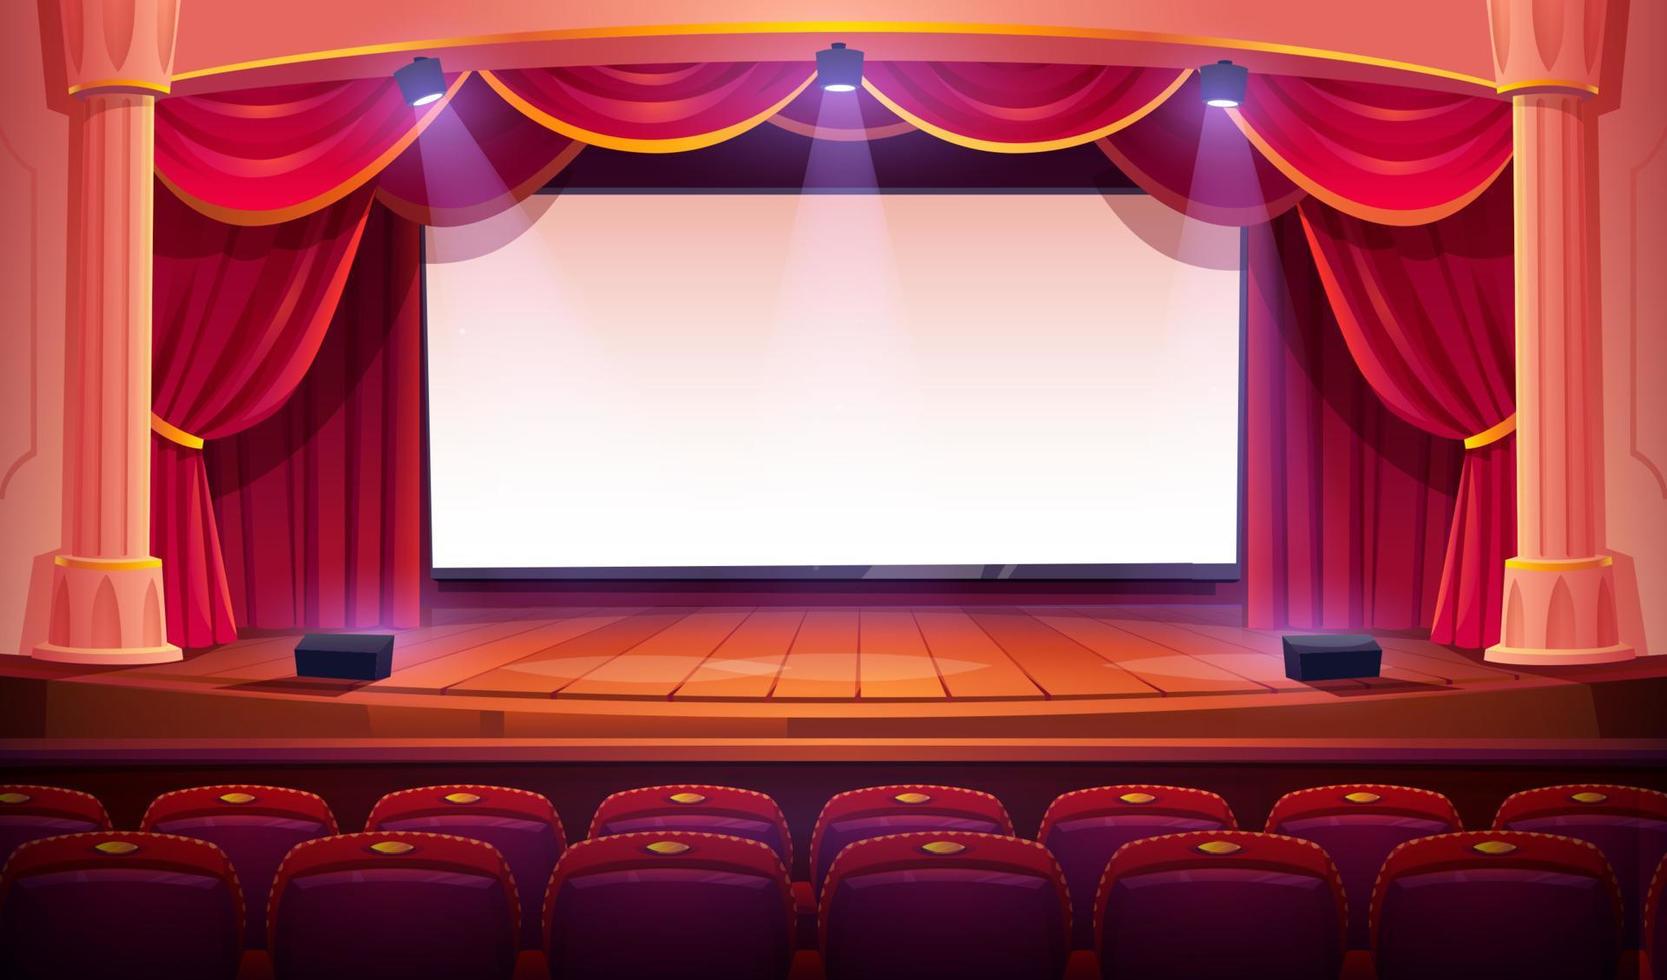 film Teatro con bianca schermo, tende, posti a sedere vettore